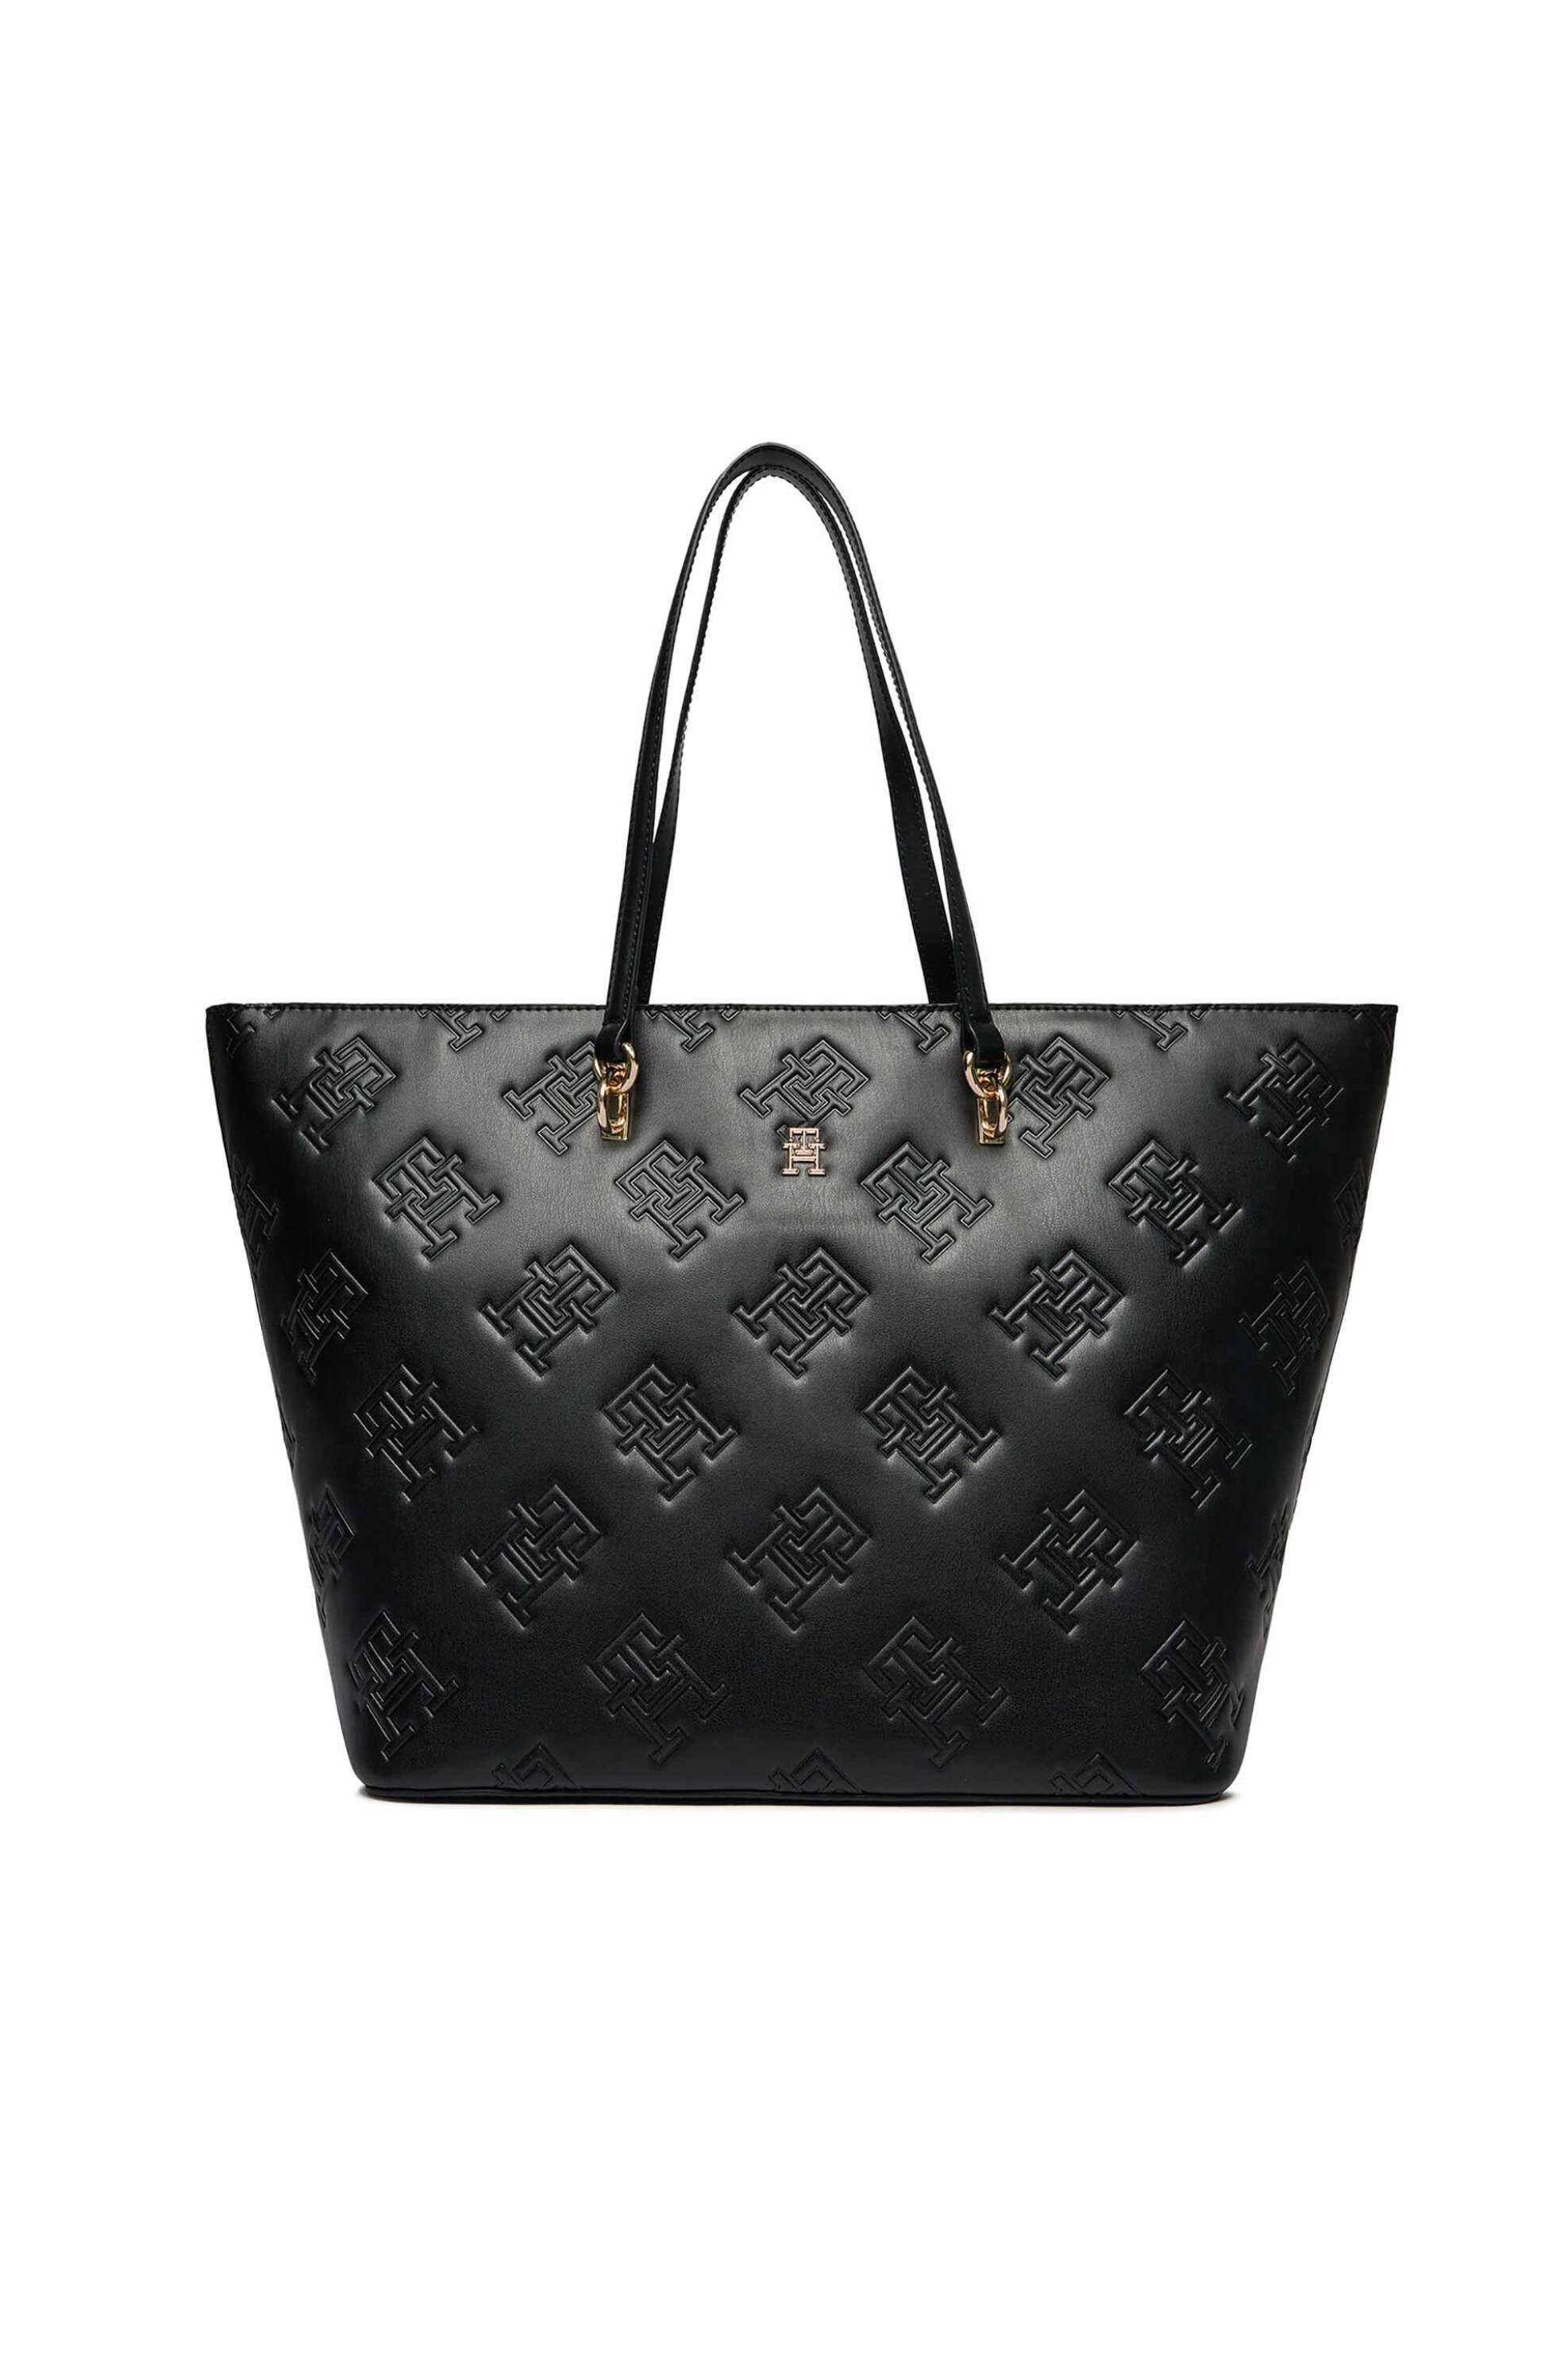 Γυναίκα > ΤΣΑΝΤΕΣ > Τσάντες Ώμου & Shopper Bags Tommy Hilfiger γυναικεία τσάντα tote faux leather με all-over ανάγλυφο monogram logo - AW0AW15726 Μαύρο